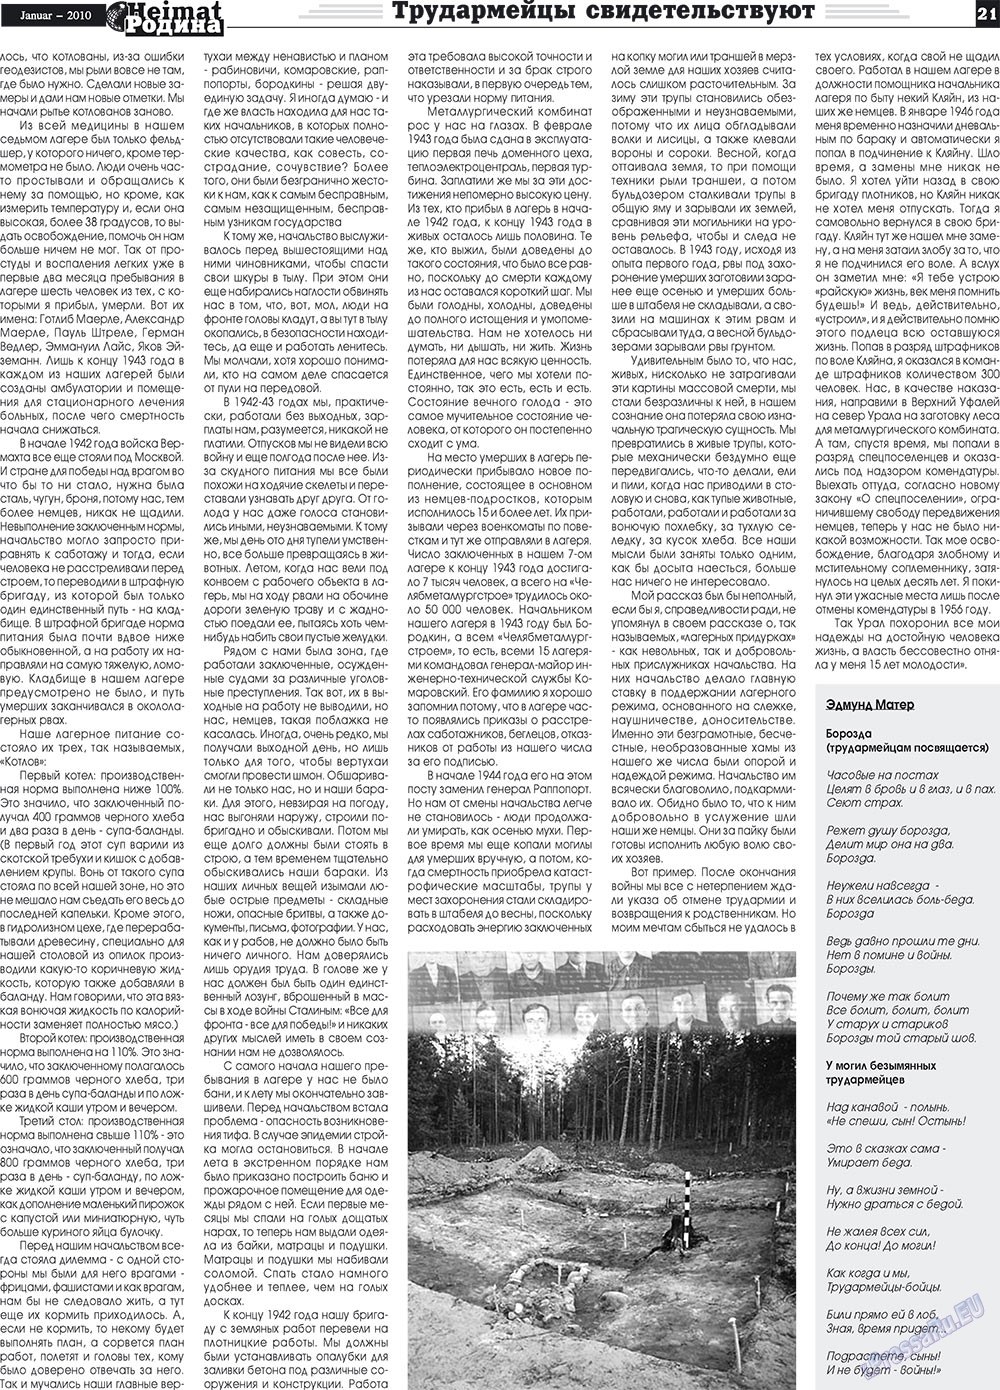 Heimat-Родина (газета). 2010 год, номер 1, стр. 21